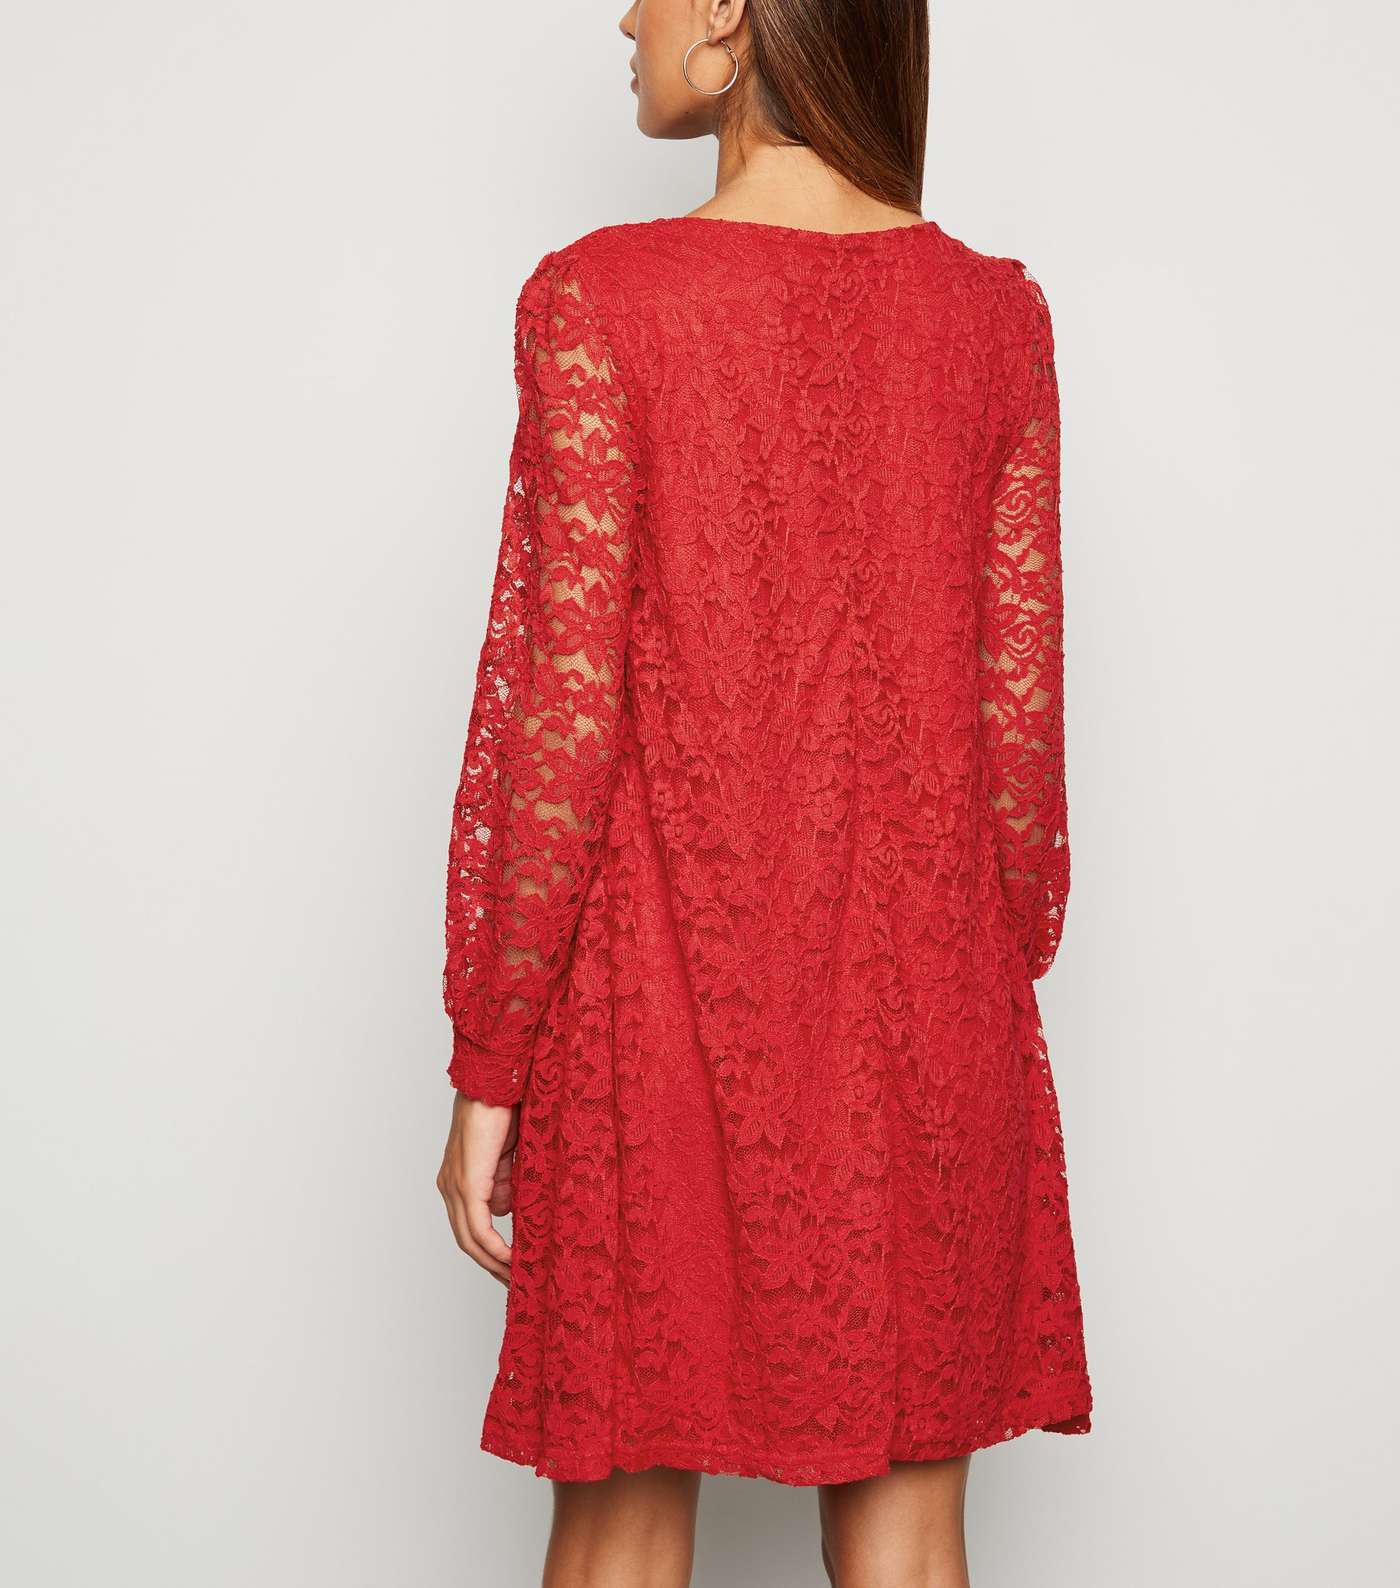 Mela Red Lace Tunic Dress Image 3